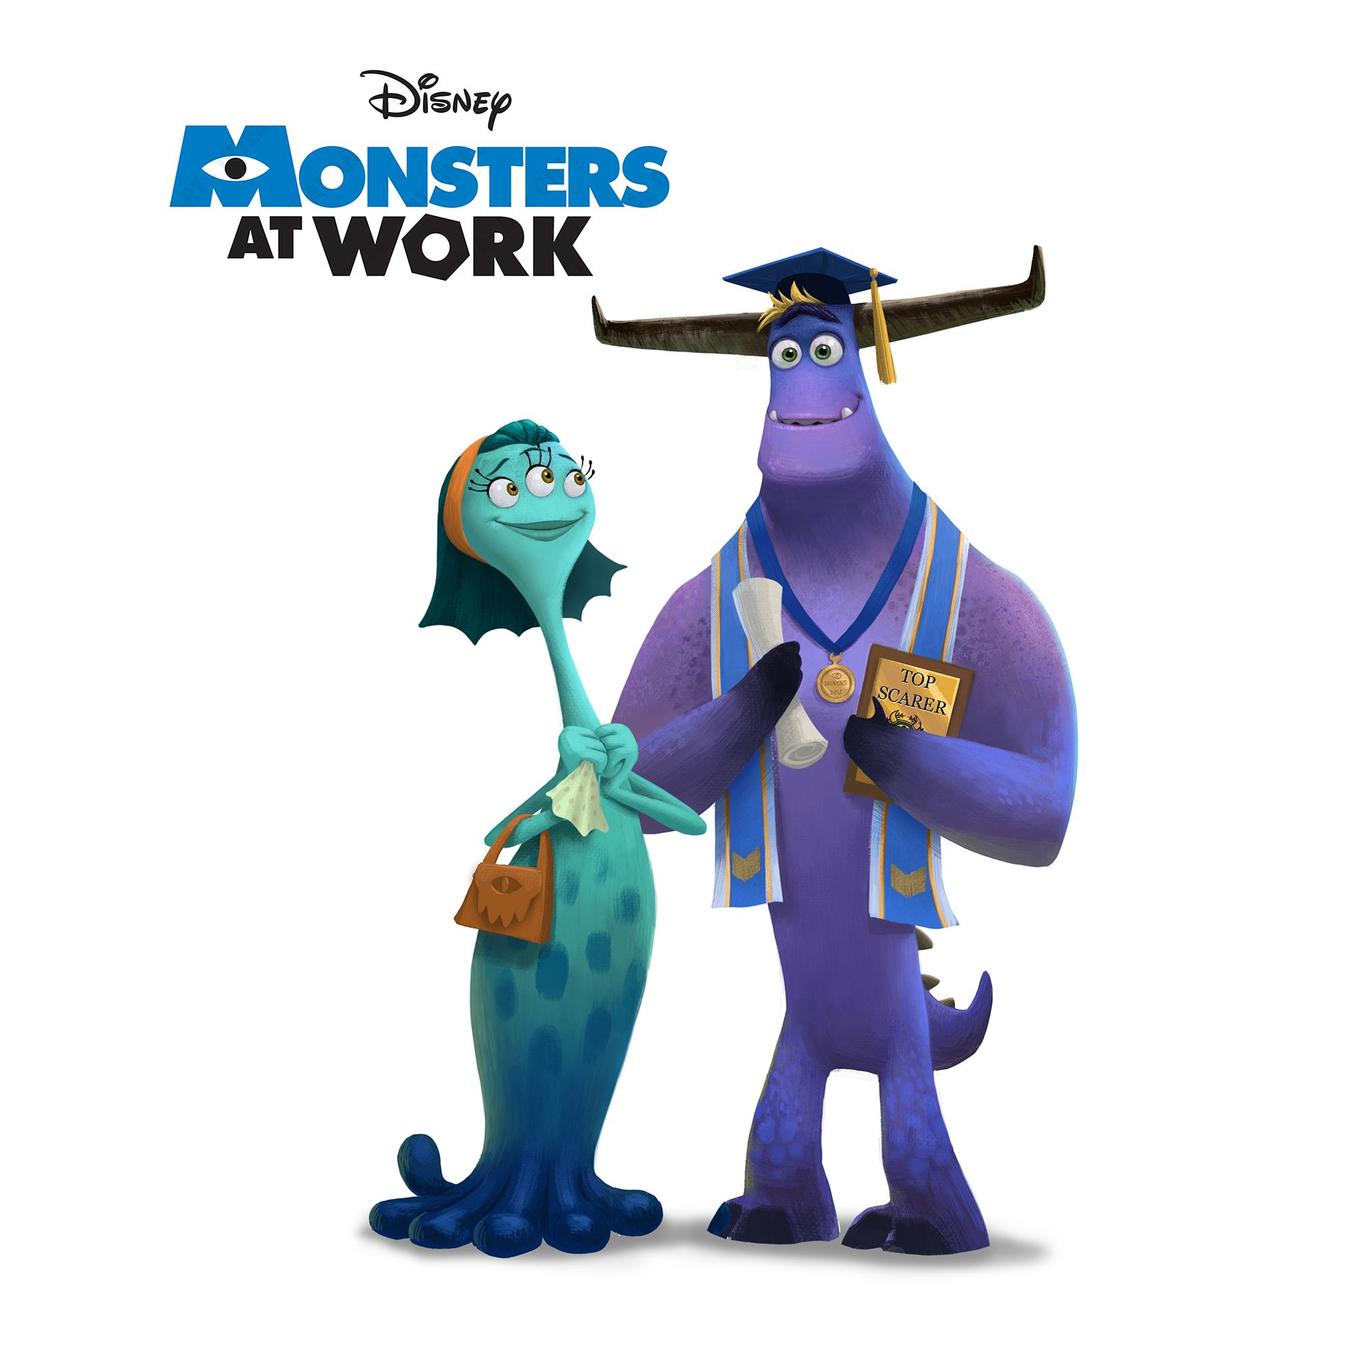 Monsters at Work: Dublador de Monstros S.A revela novidades sobre nova série